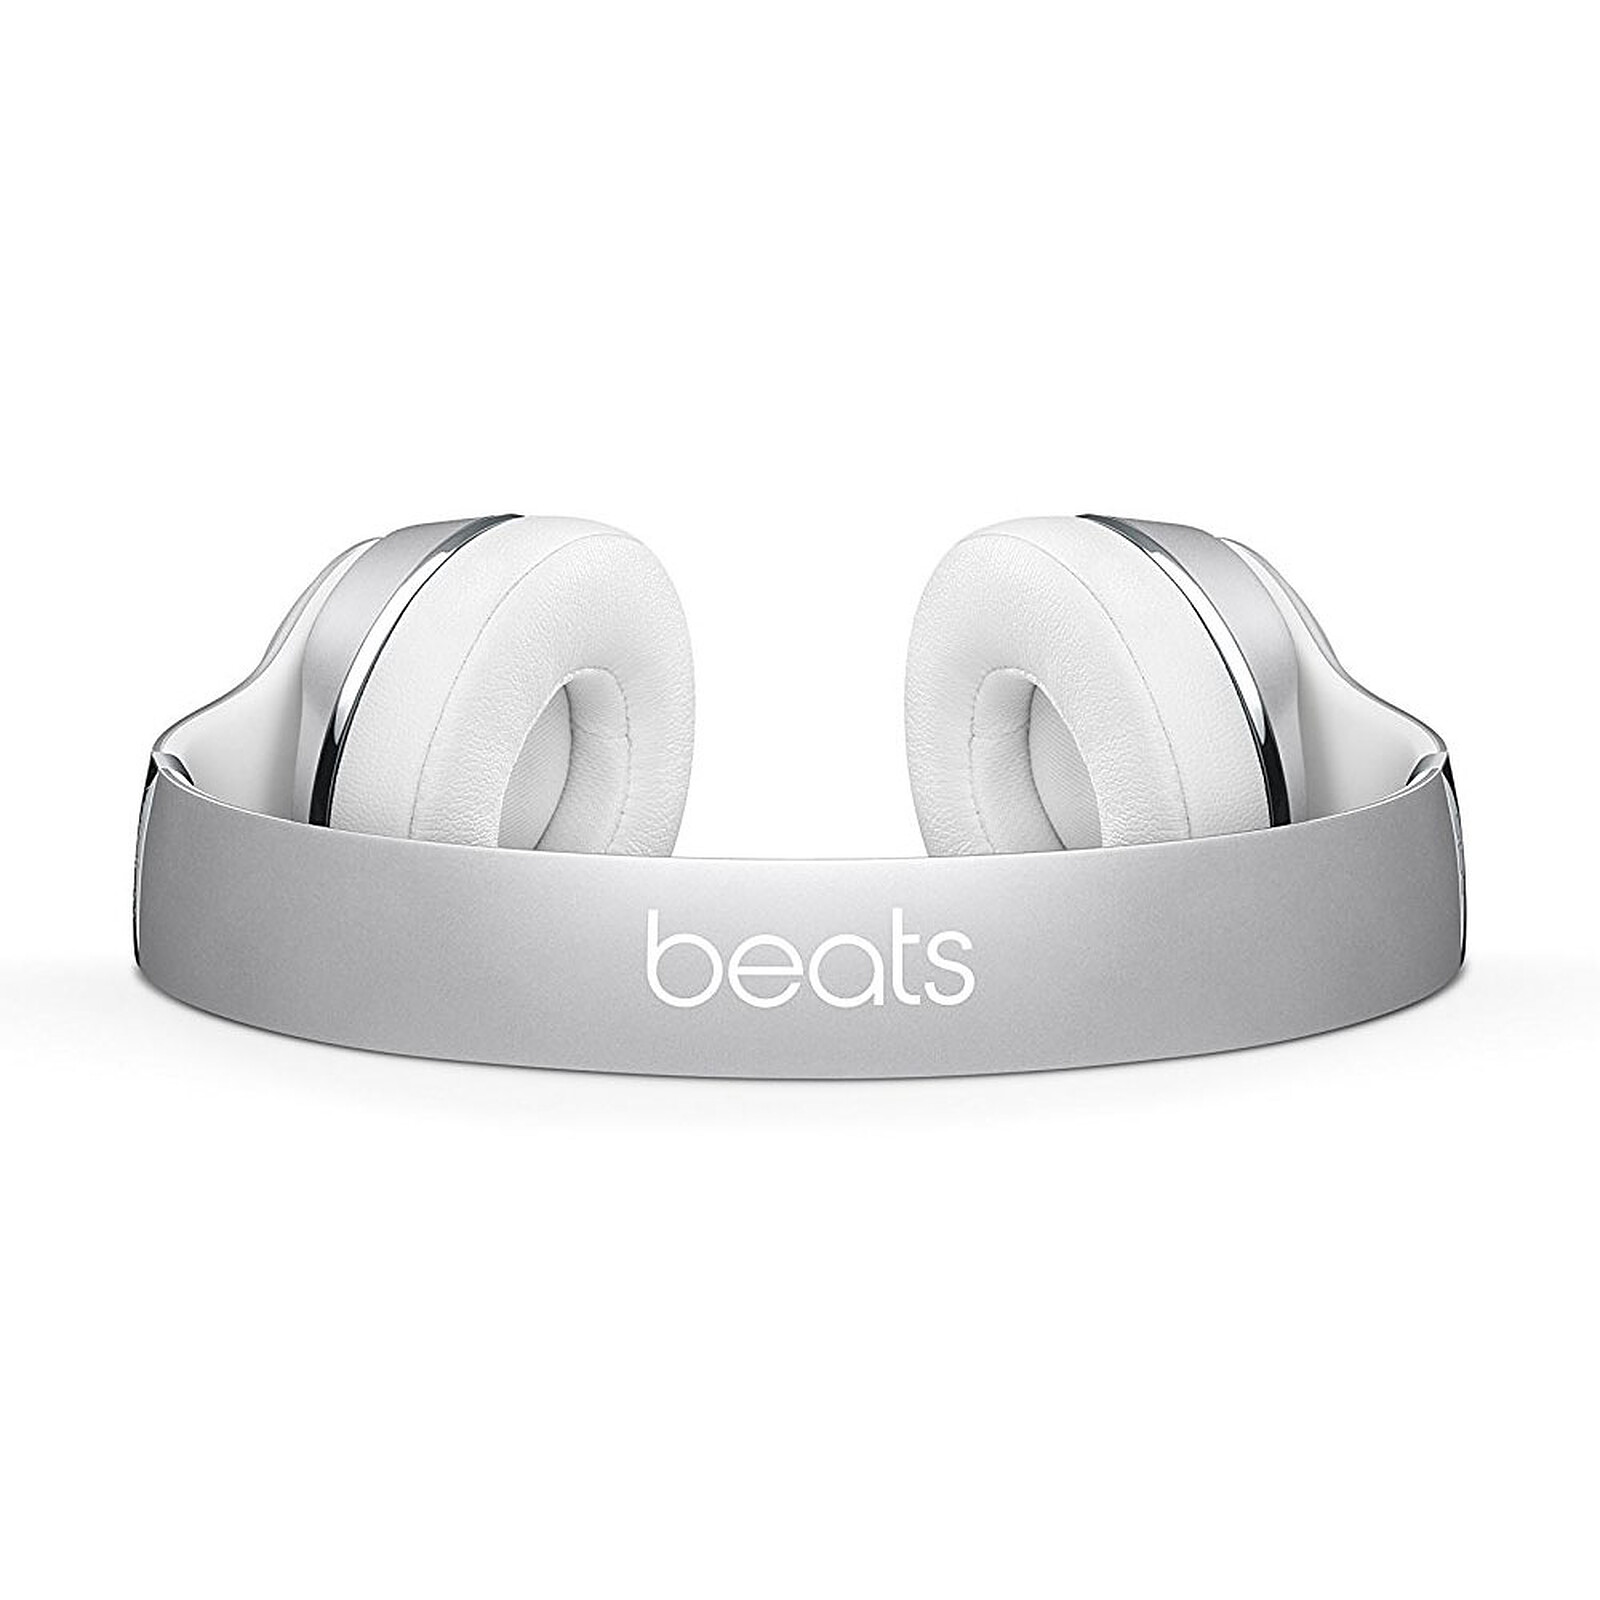 Casque sans fil Beats Solo3 - Argent - Apple (FR)